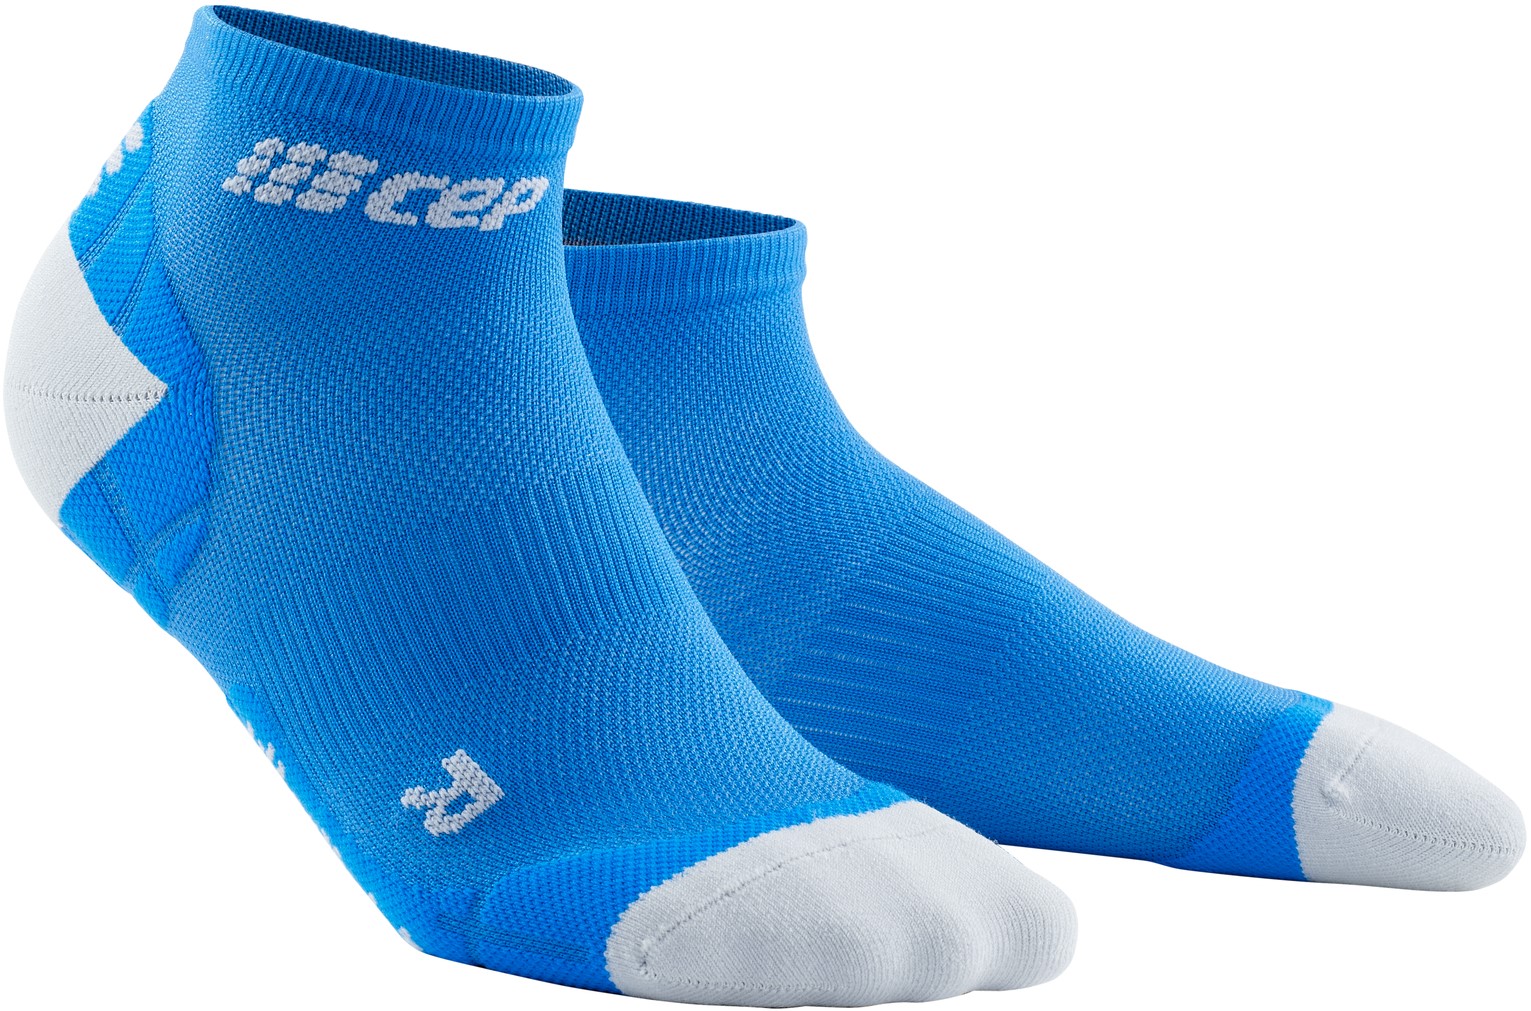 CEP dámské kotníkové běžecké kompresní ponožky ULTRALIGHT - elektrická modř / světle šedá II (EUR 34-37)